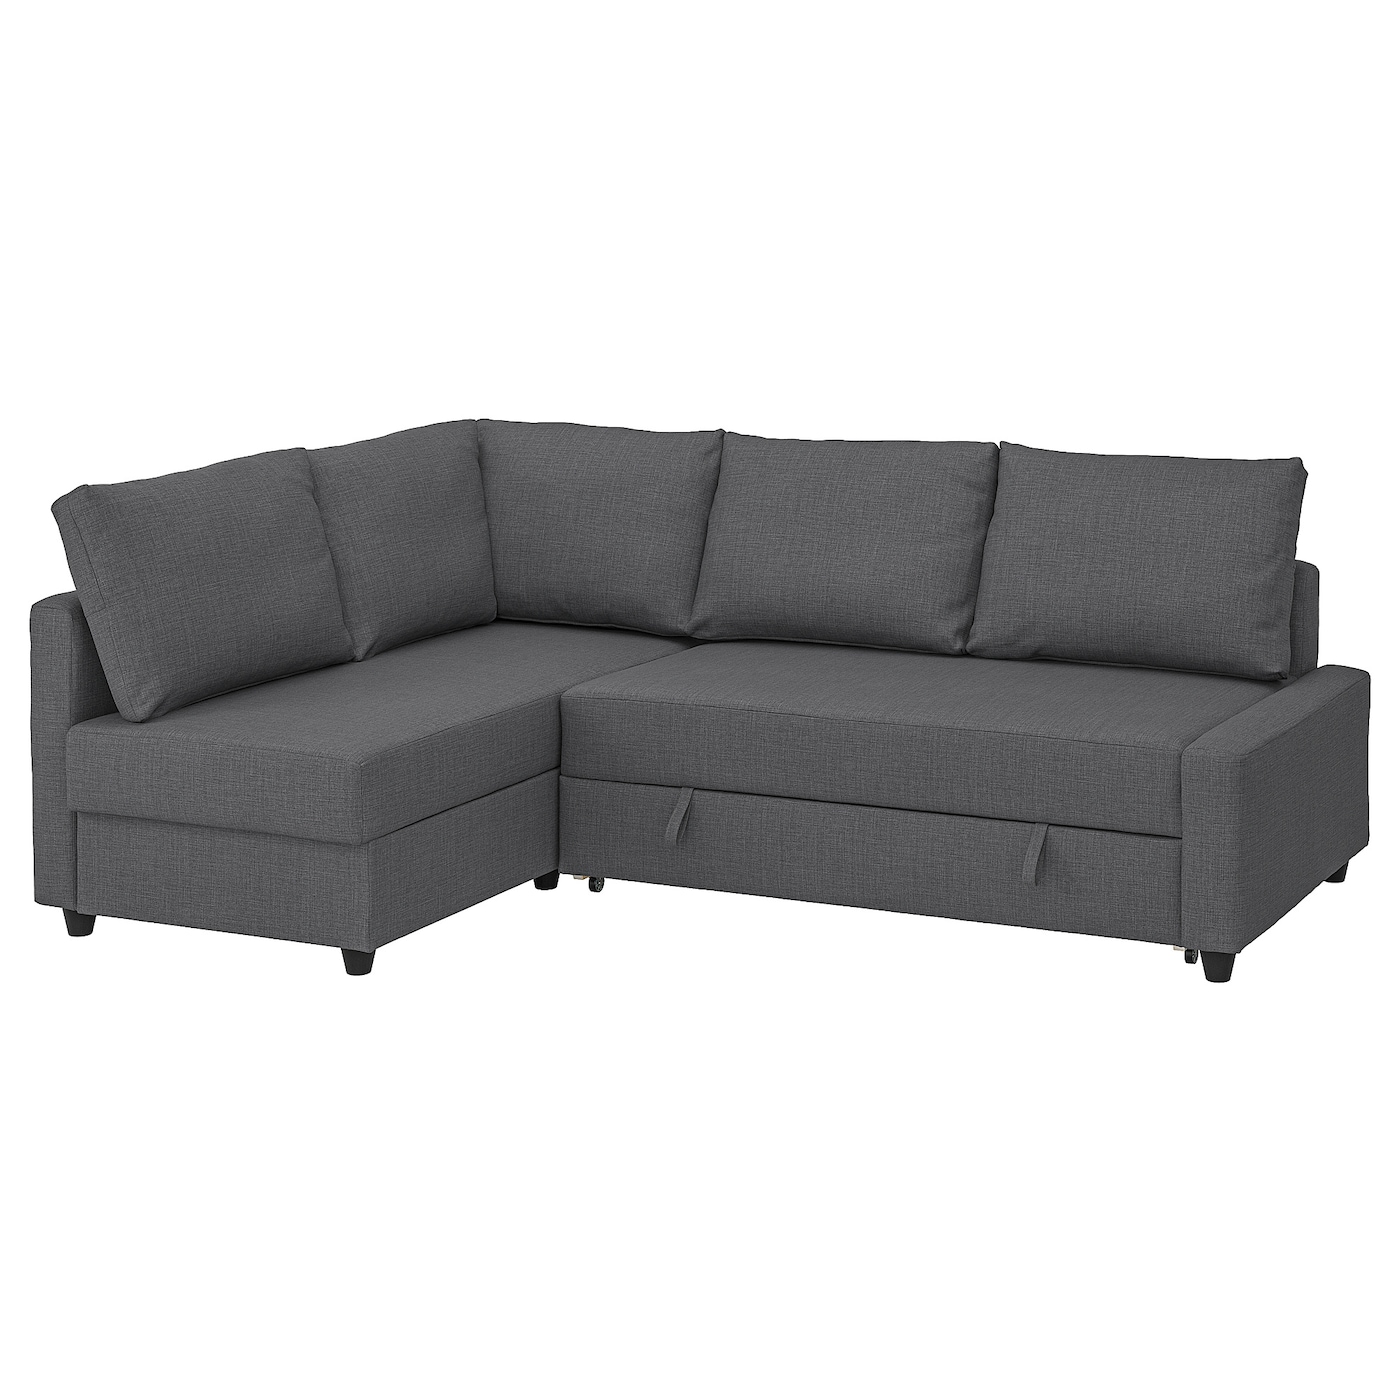 диван кровать угловой ткань непал гранд 7 ФРИХЕТЭН Диван-кровать угловой + место для хранения, дополнительные подушки спинки в комплекте/Скифтебо темно-серый FRIHETEN IKEA